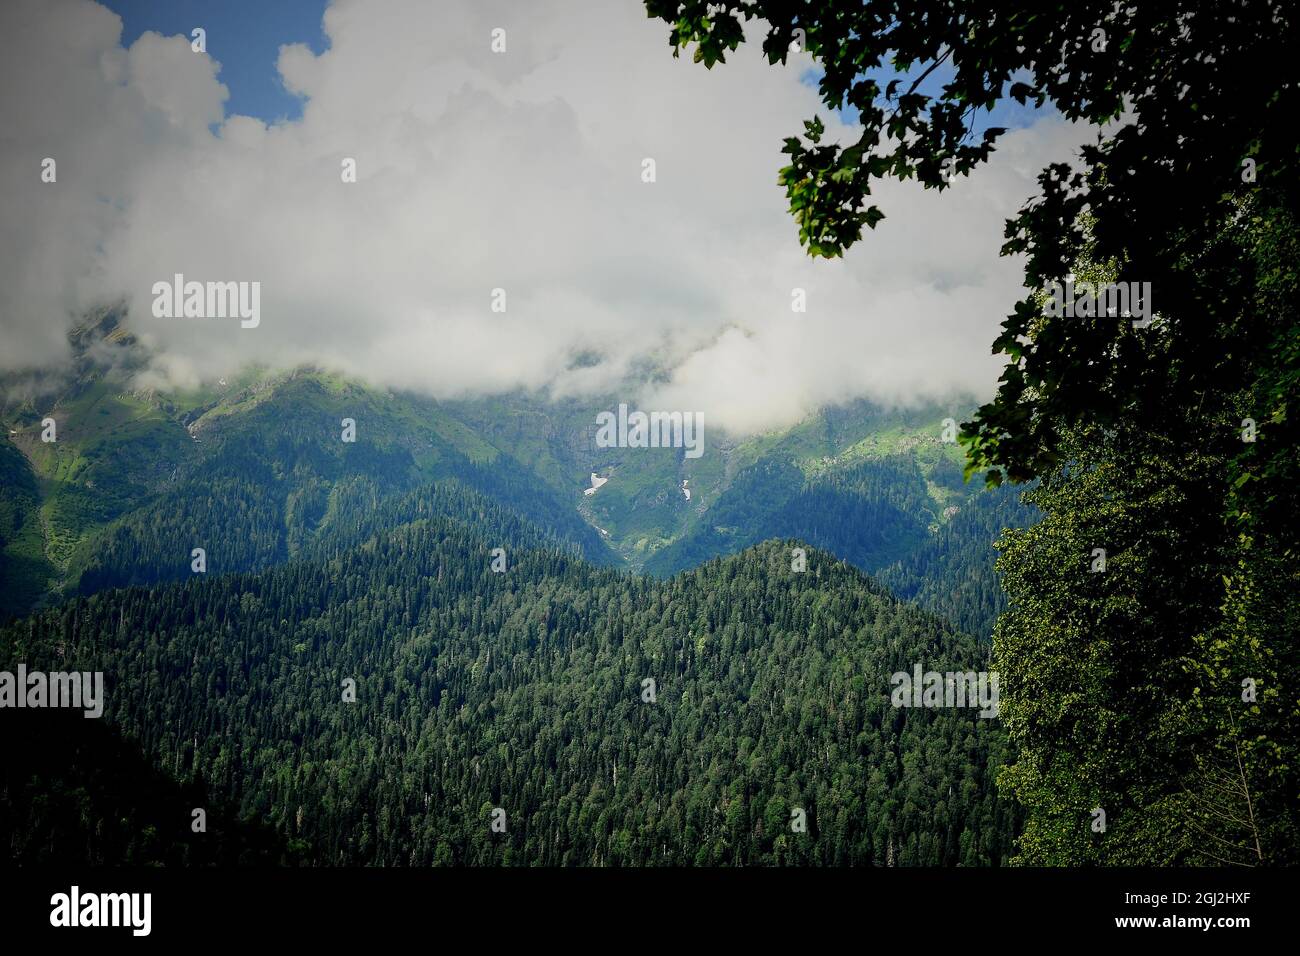 Nuvole nelle cime verdi delle montagne. Abkhazia, il paese dell'anima. Foto Stock